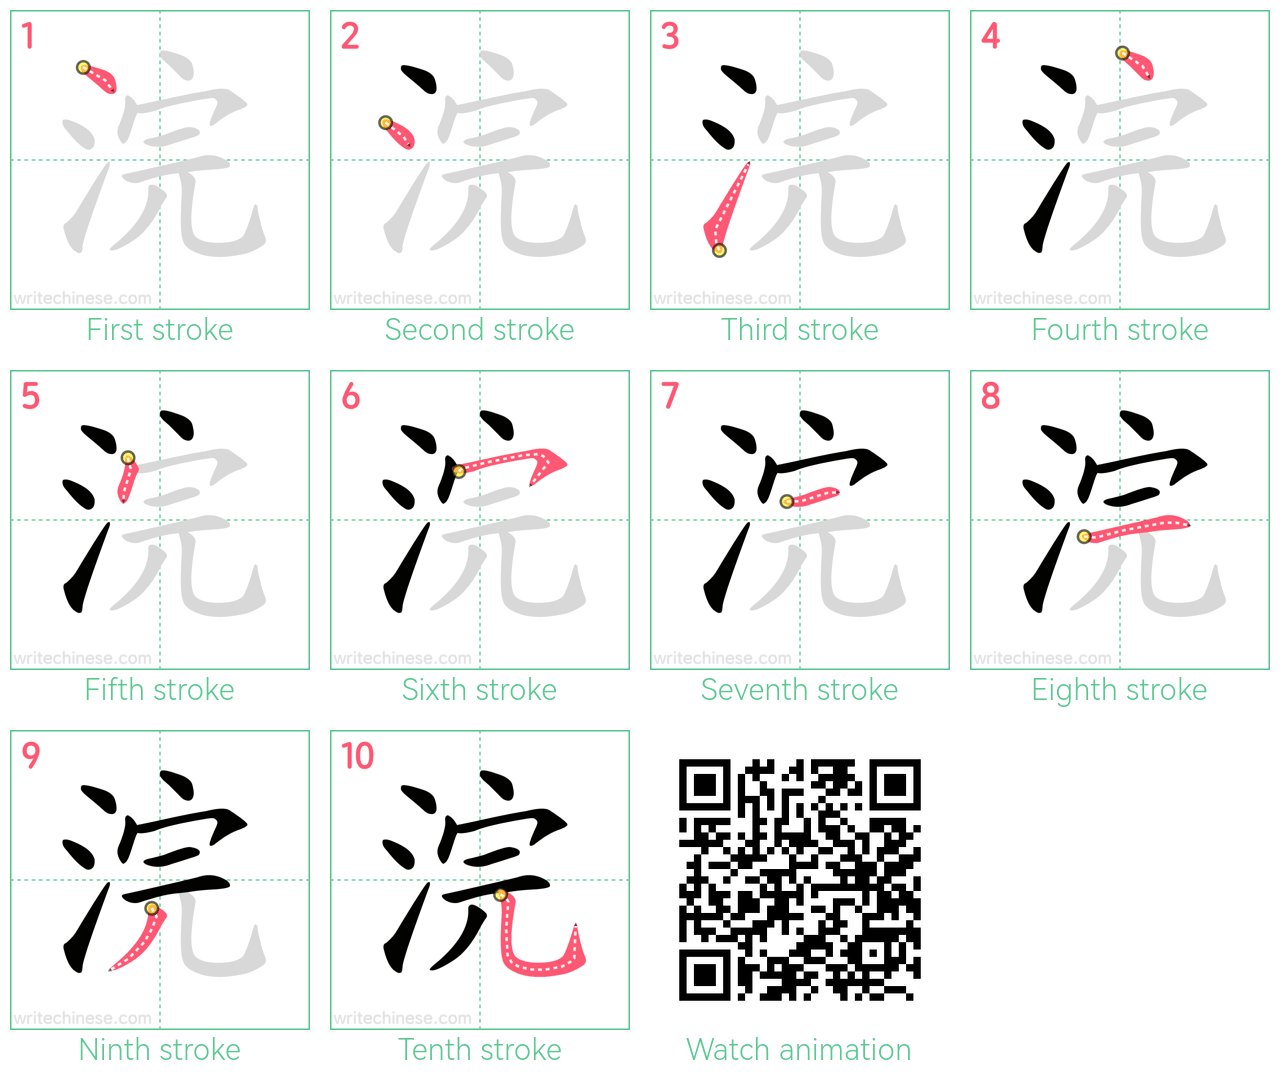 浣 step-by-step stroke order diagrams